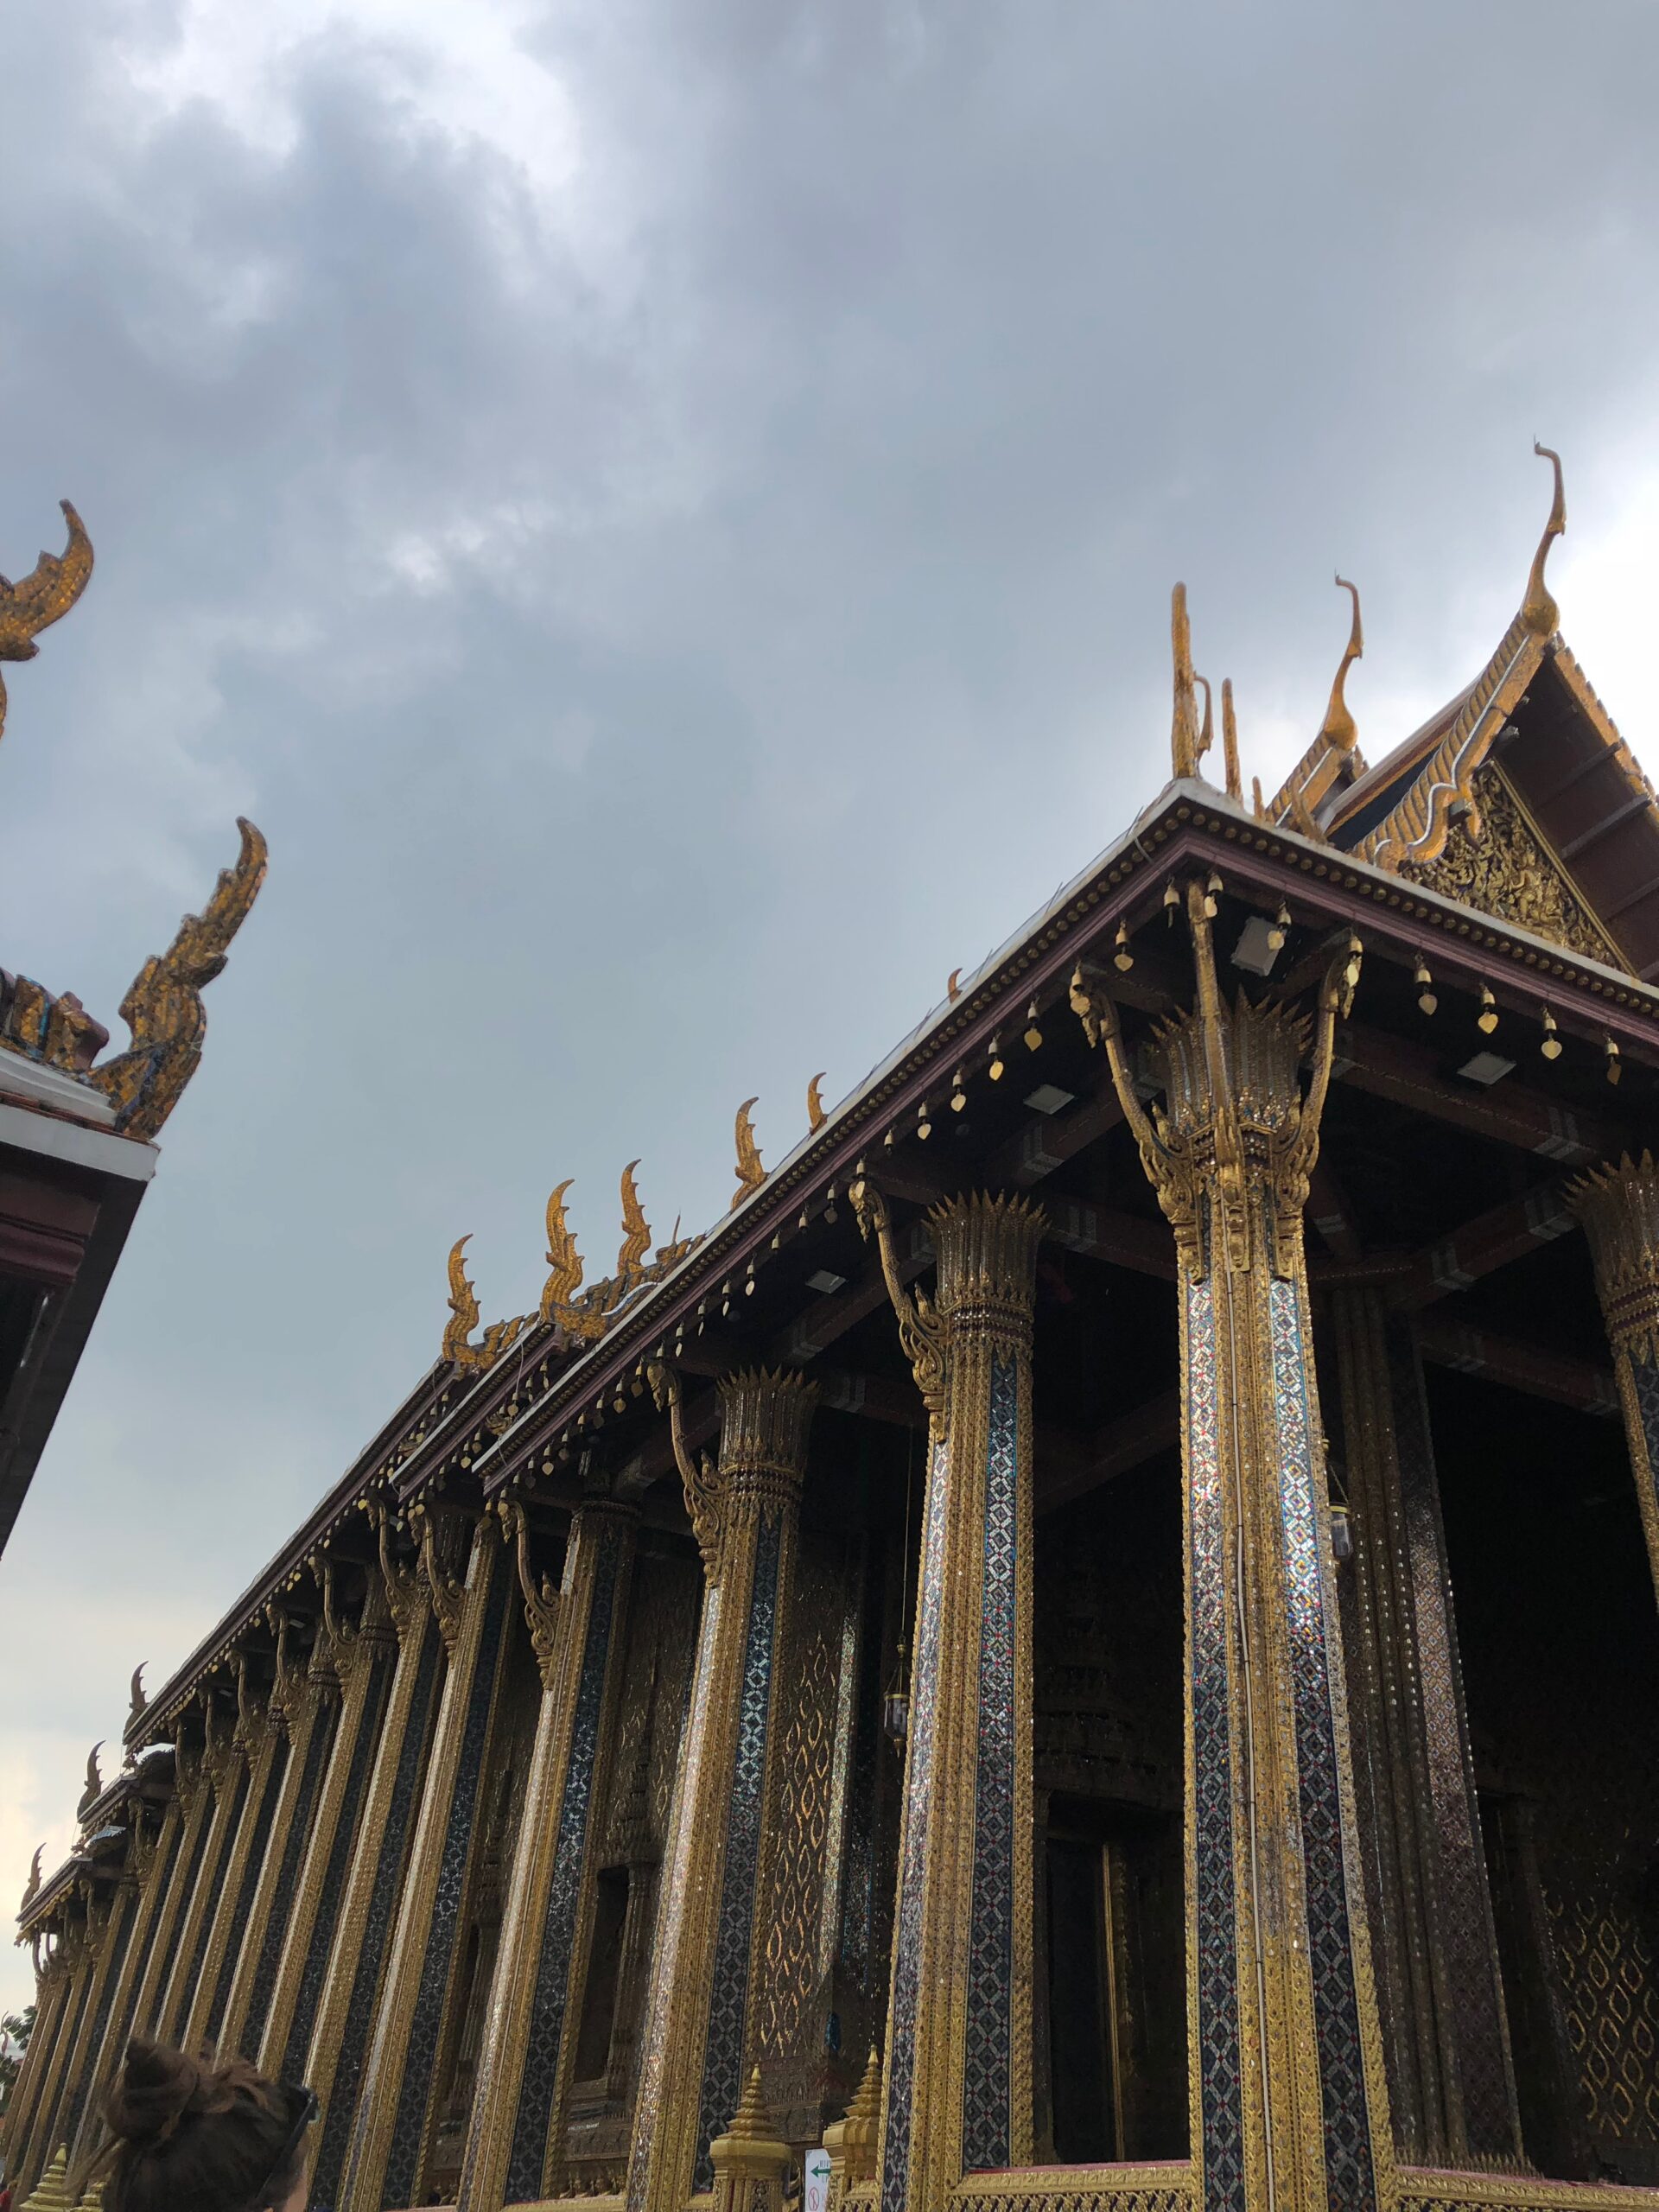 Bild: Eines der imposanten Gebäude des Wat Phra Kaeo - Temple of the Emerald Buddha, Thailand